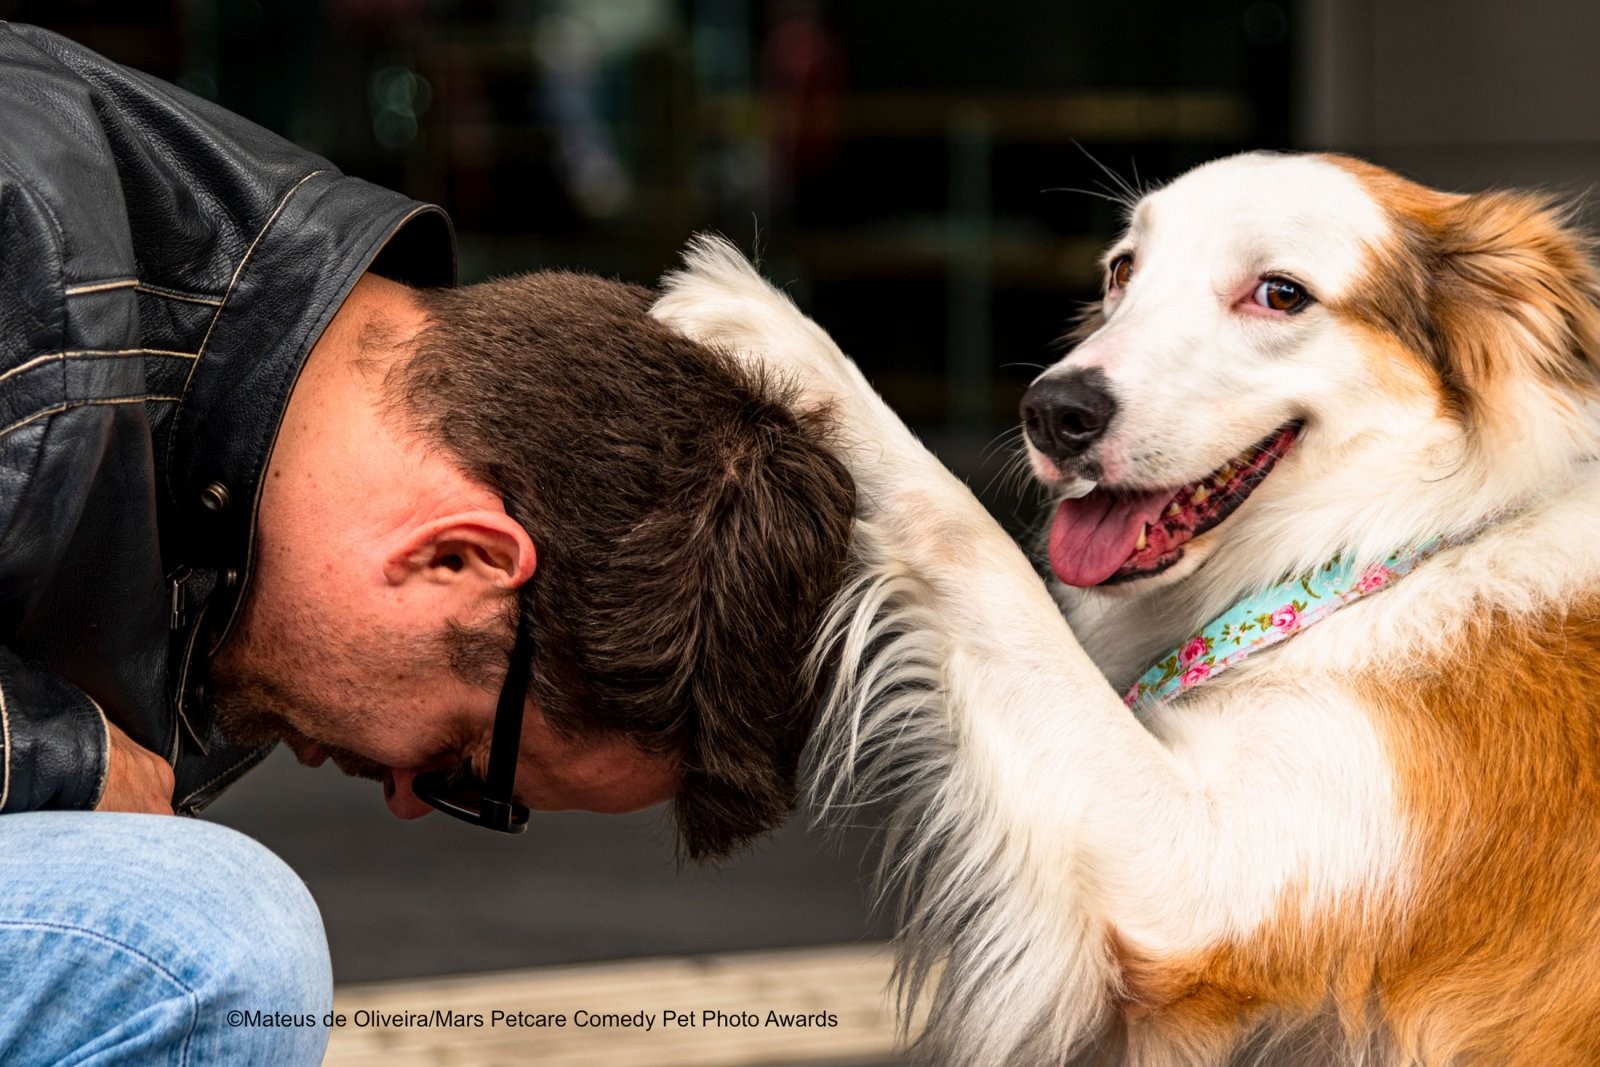 Finalista do concurso de fotos de pets mais engraçadas de 2020 (Foto: Divulgação Mars Petcare Comedy Pet Photo Awards)